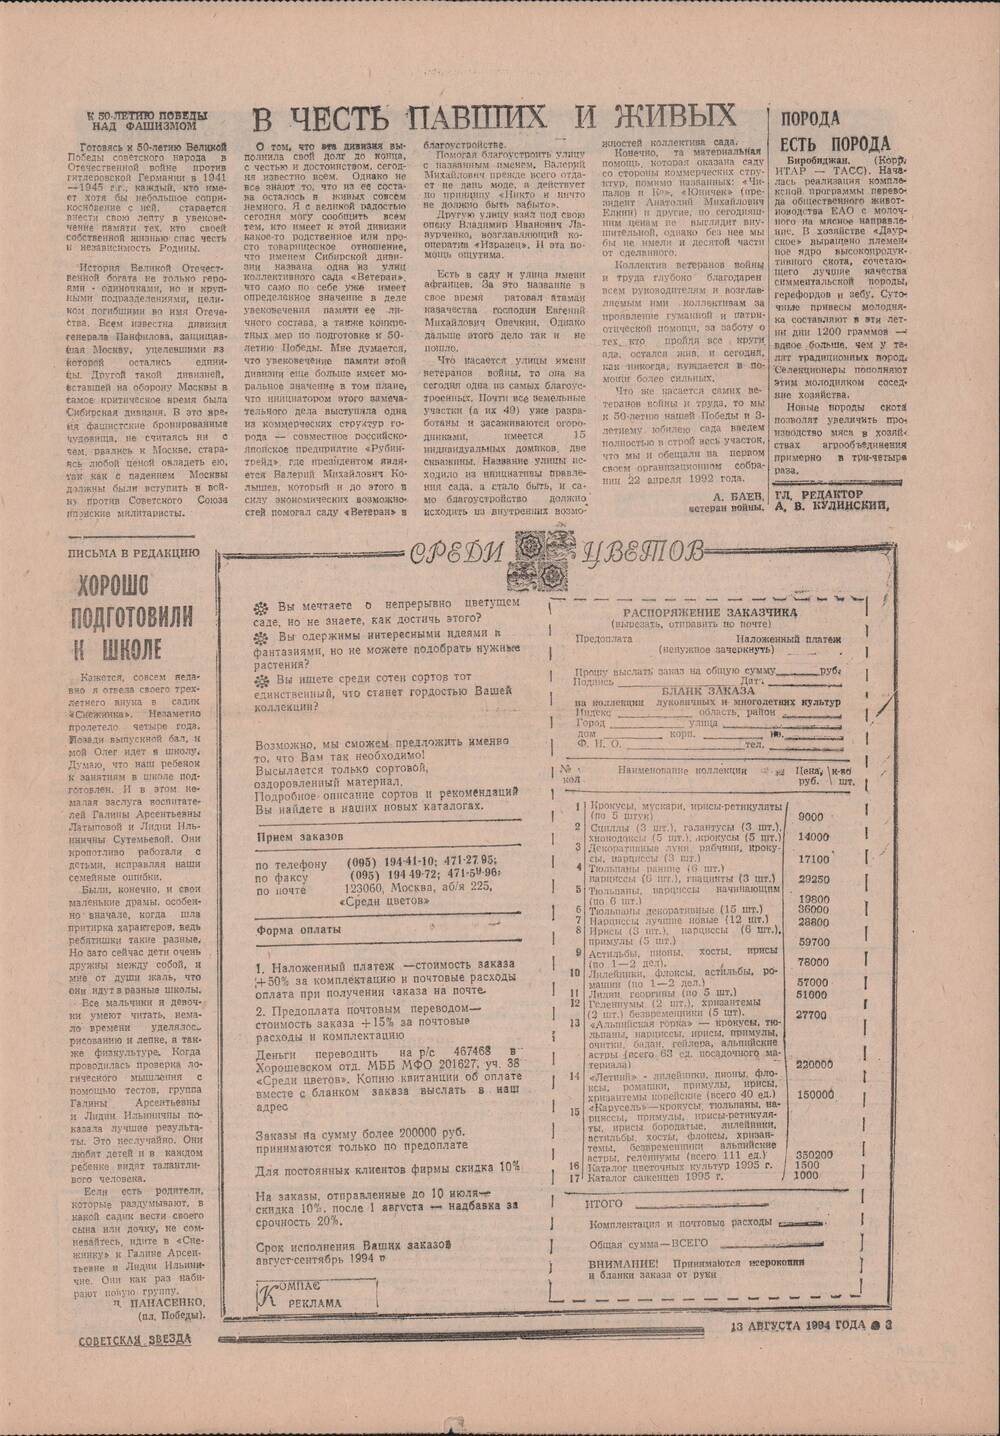 Газета «Советская звезда» № 155 (14404) от 13.08.1994 под рубрикой «50 лет Великой Победы».